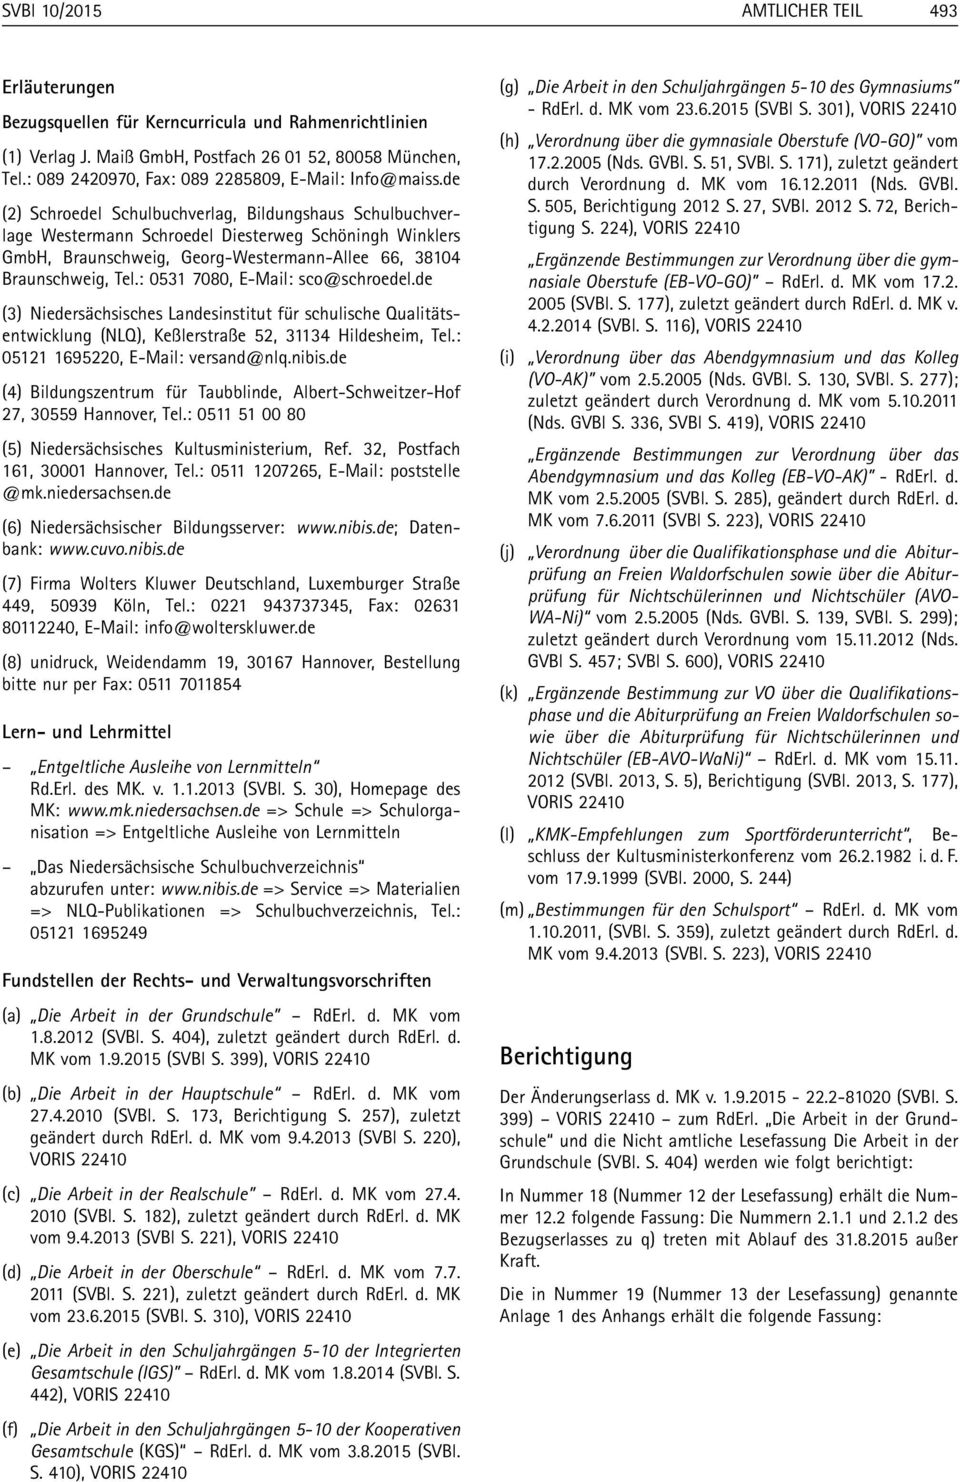 de (2) Schroedel Schulbuchverlag, Bildungshaus Schulbuchver - lage Westermann Schroedel Diesterweg Schöningh Winklers GmbH, Braunschweig, Georg-Westermann-Allee 66, 38104 Braunschweig, Tel.